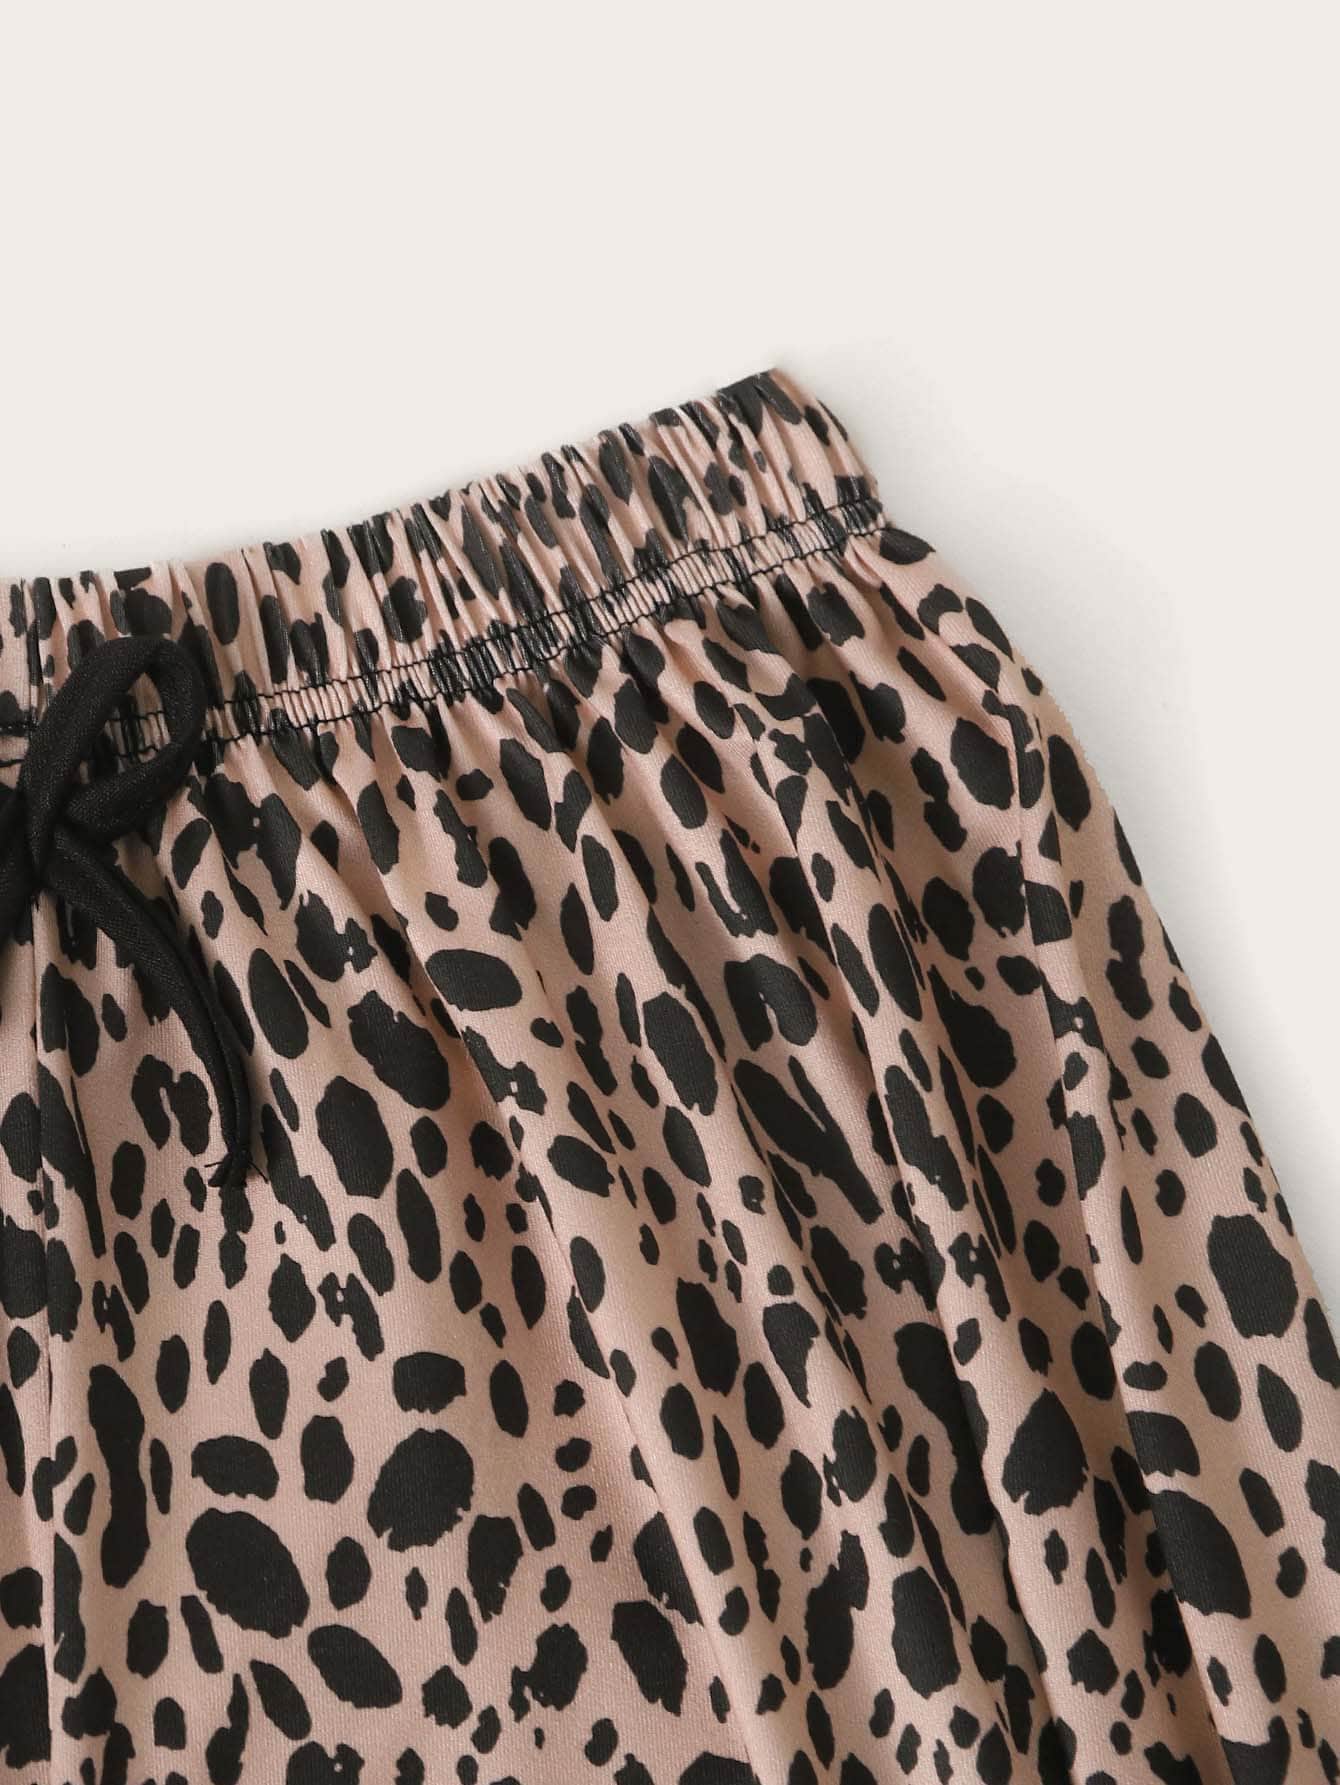 Conjunto de pijama con estampado de leopardo y letra